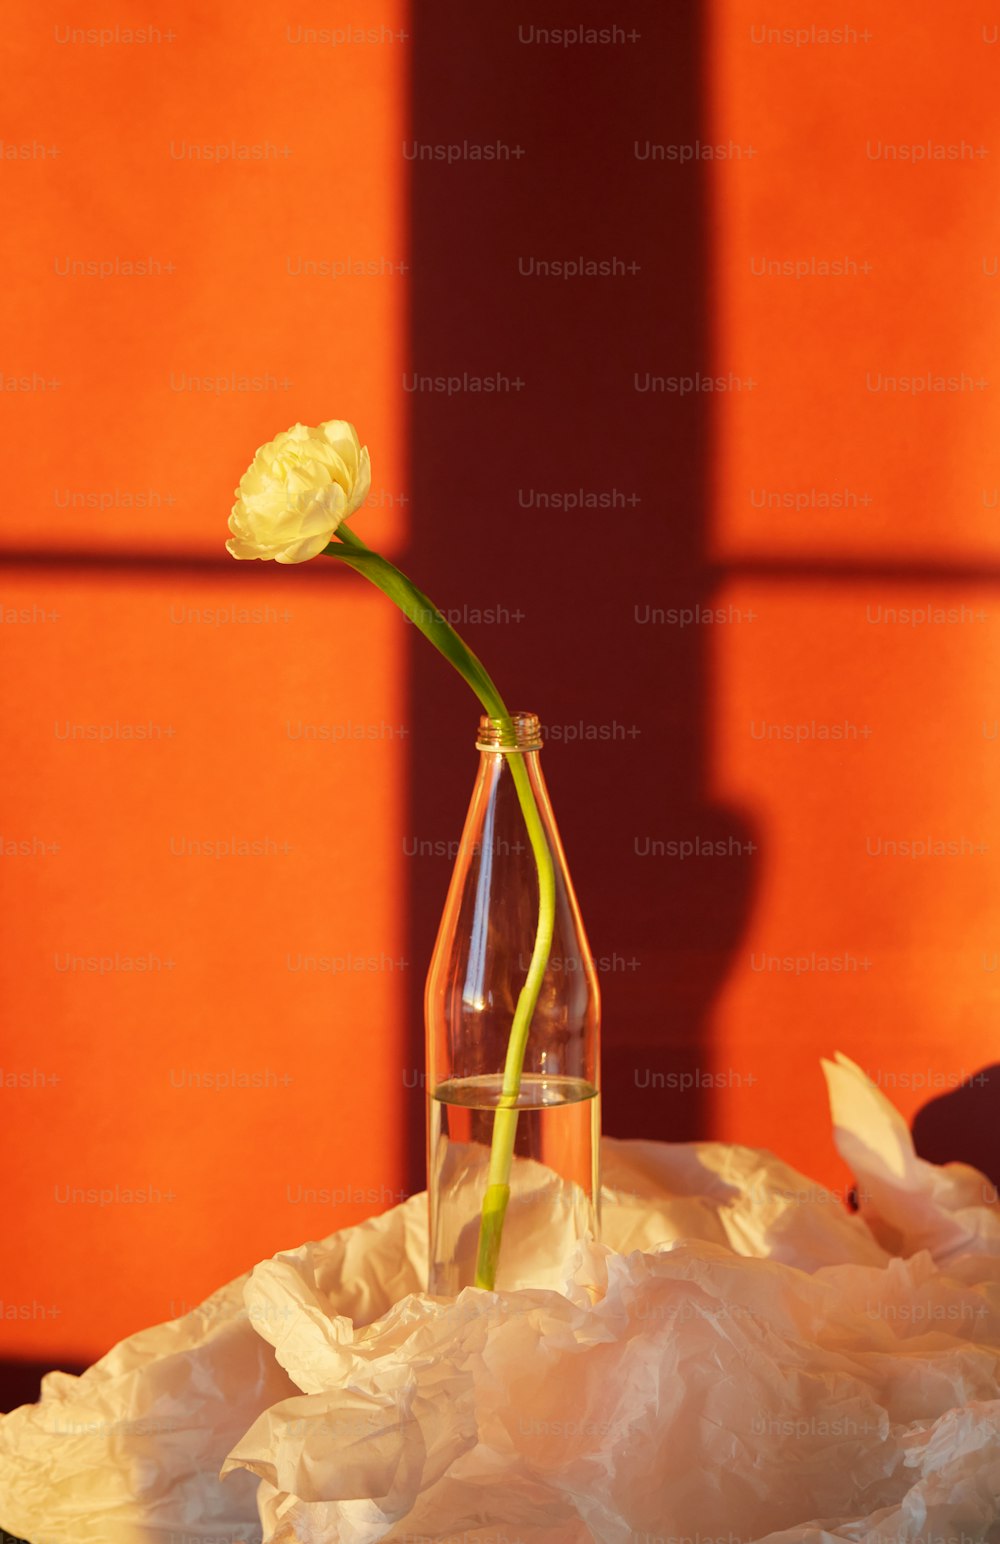 Eine gelbe Rose in einer Vase